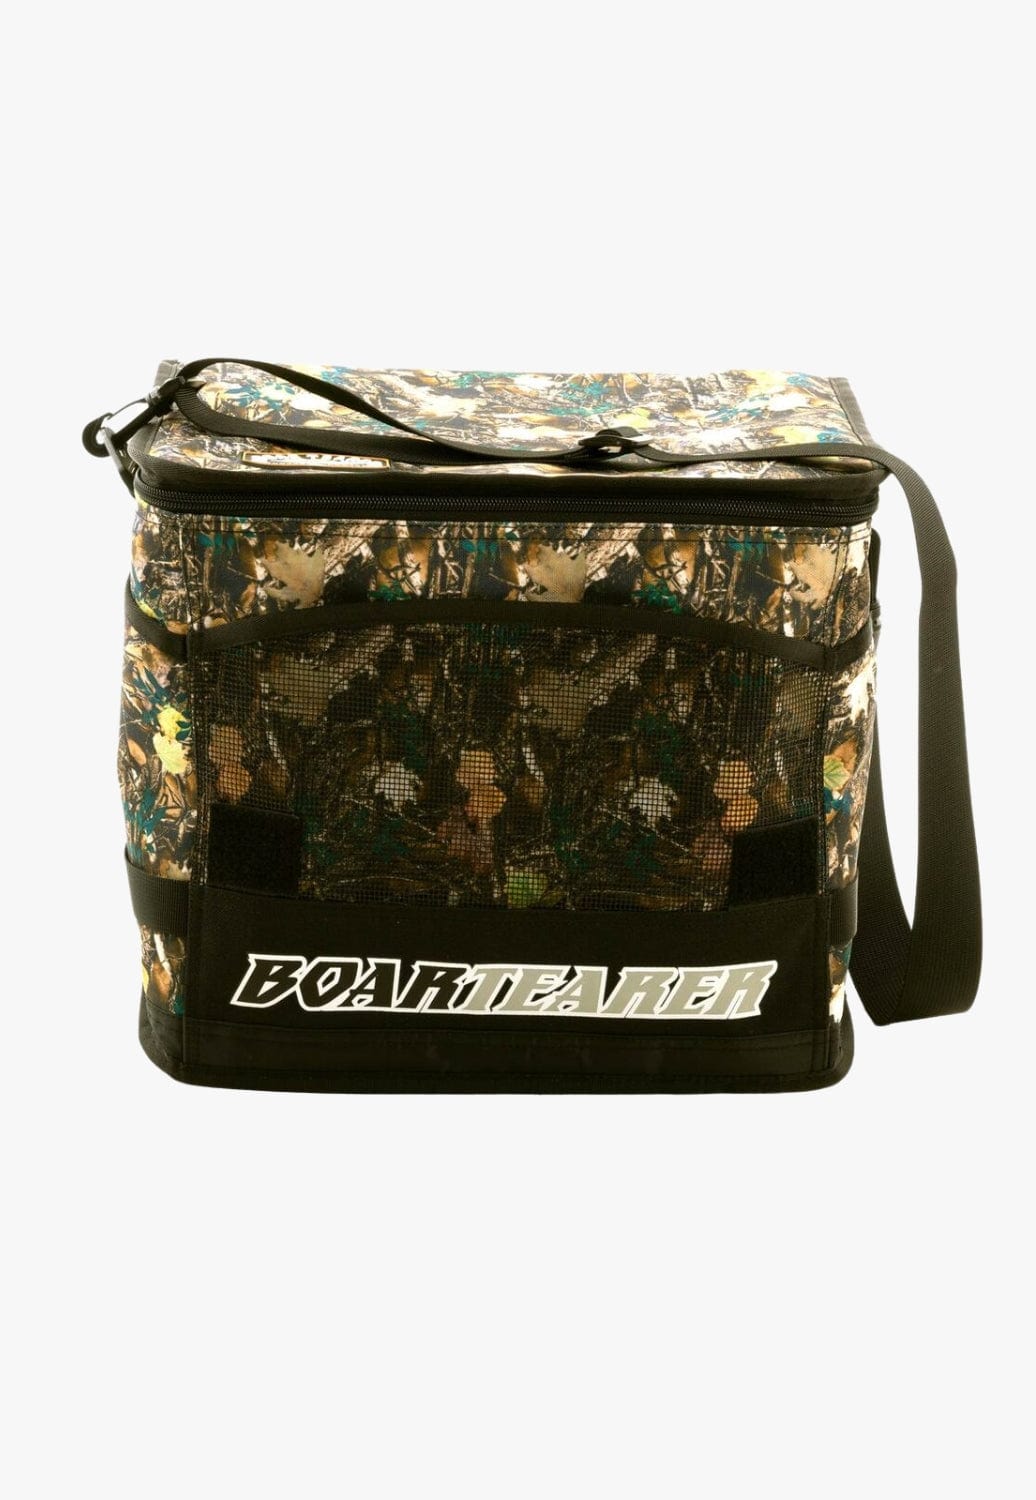 Boar Tearer TRAVEL - Travel Bags CAMO Boar Tearer Winton Cooler Bag